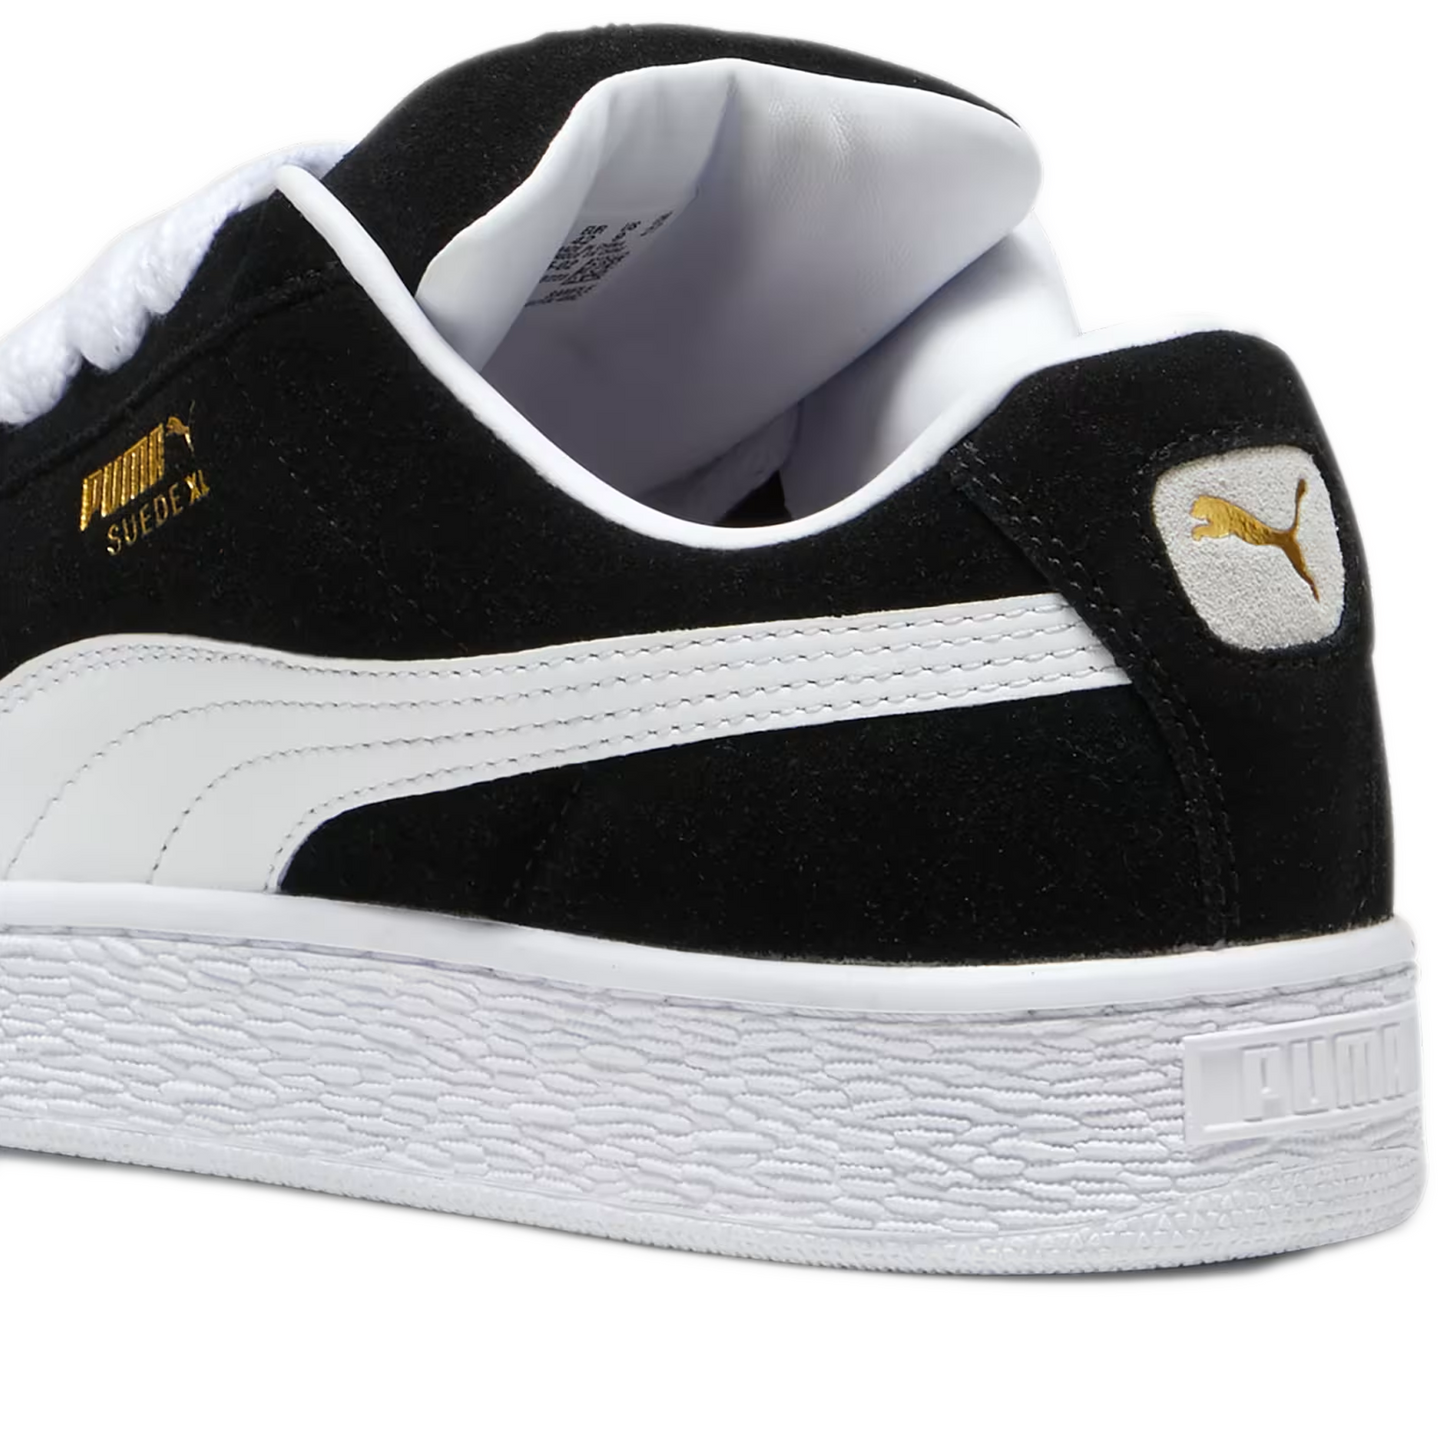 Men's Puma Suede XL Shoes - Black/ White